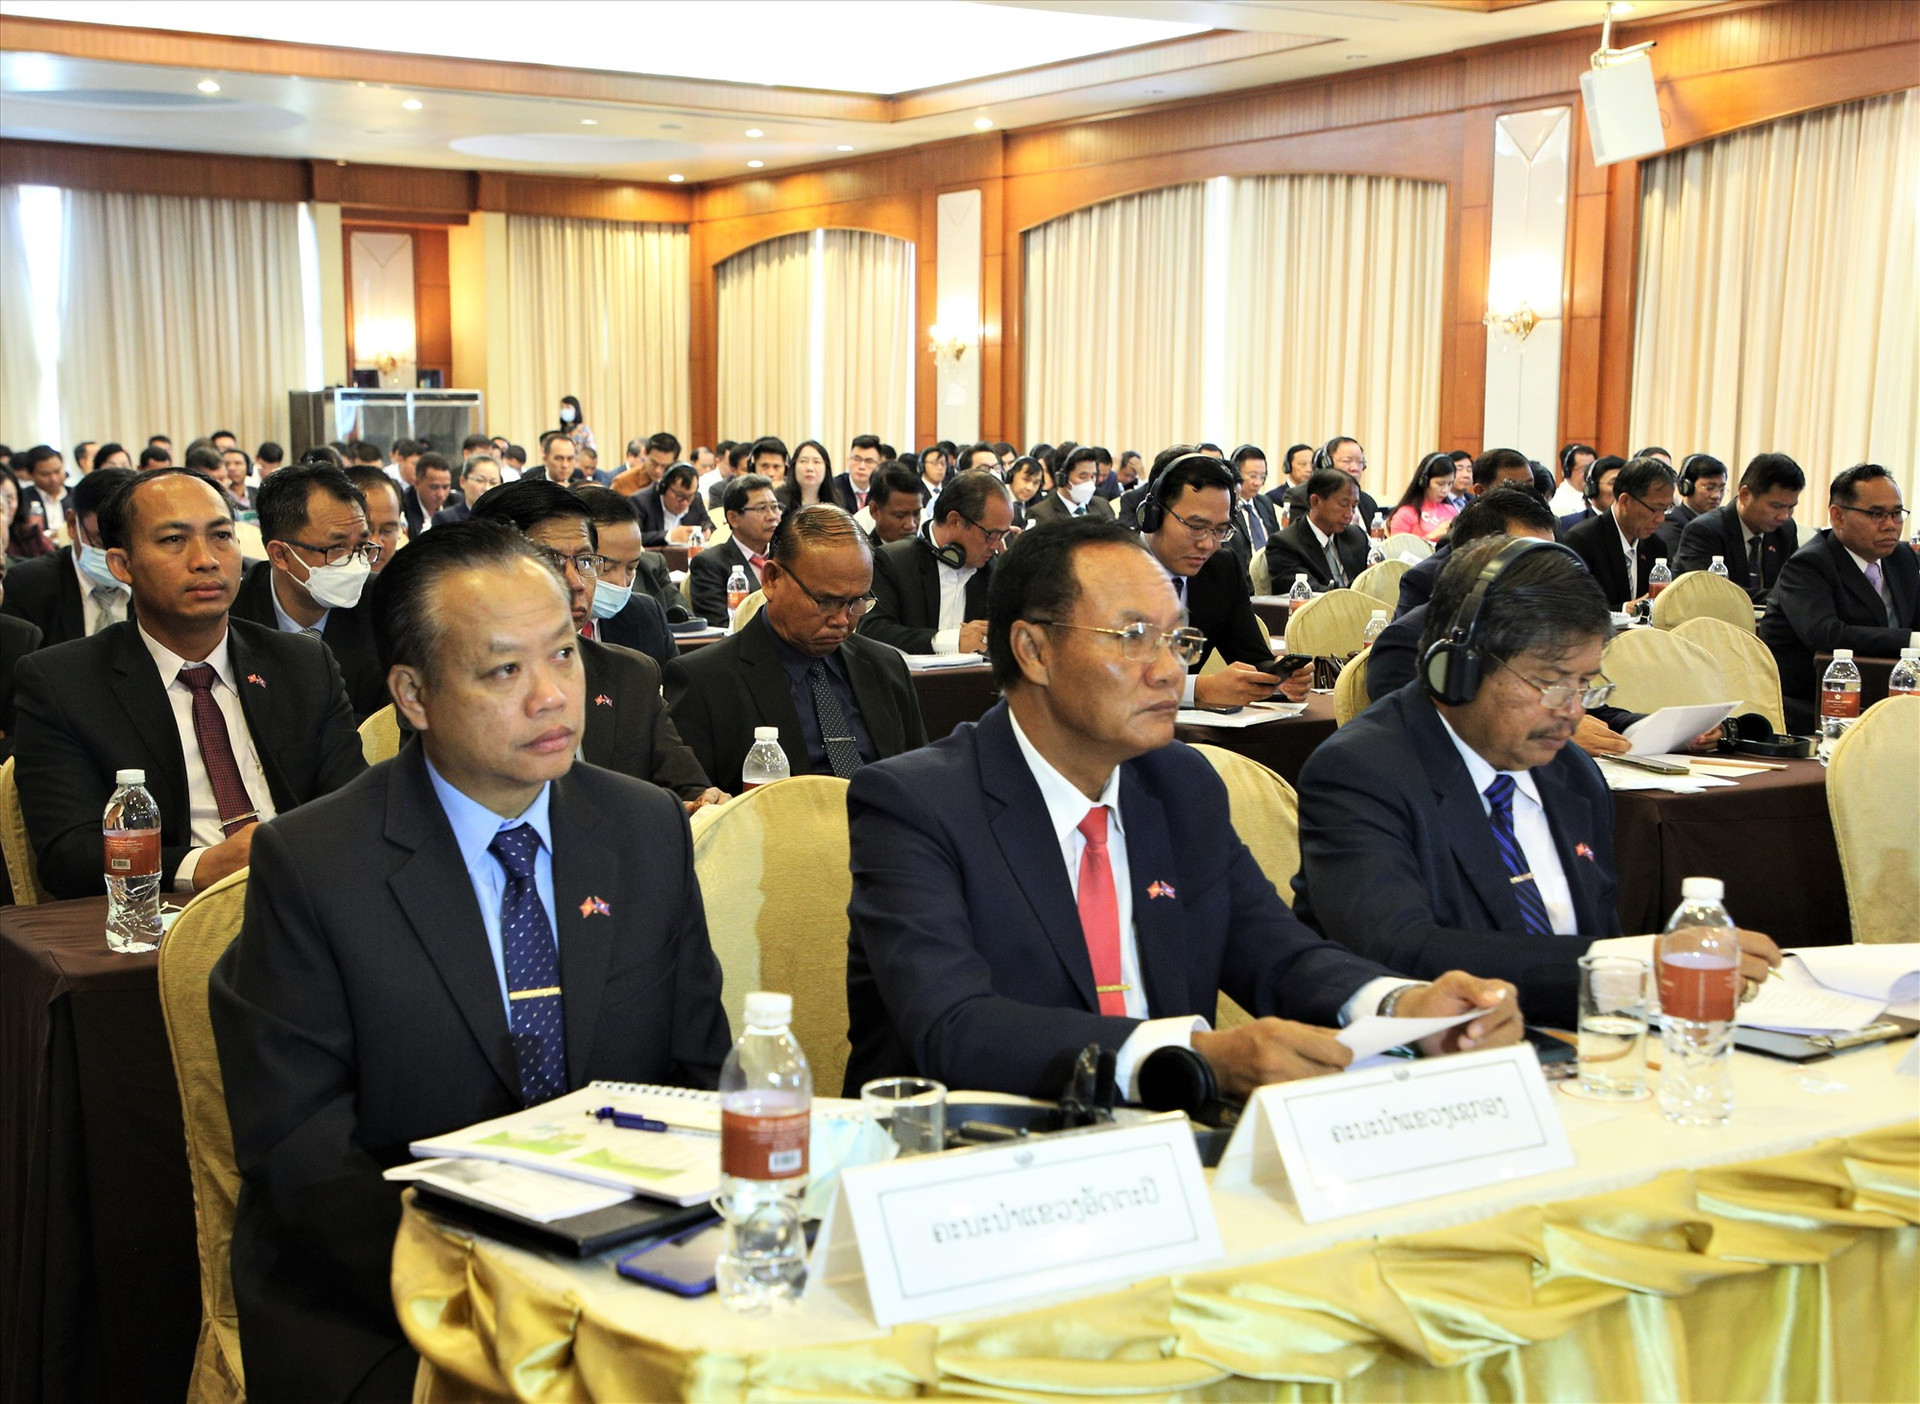 Lãnh đạo các tỉnh Nam Lào tham dự hội nghị, mong muốn hợp tác lâu dài về đầu tư phát triển kinh tế cùng các tỉnh của Việt Nam. Ảnh: A.N